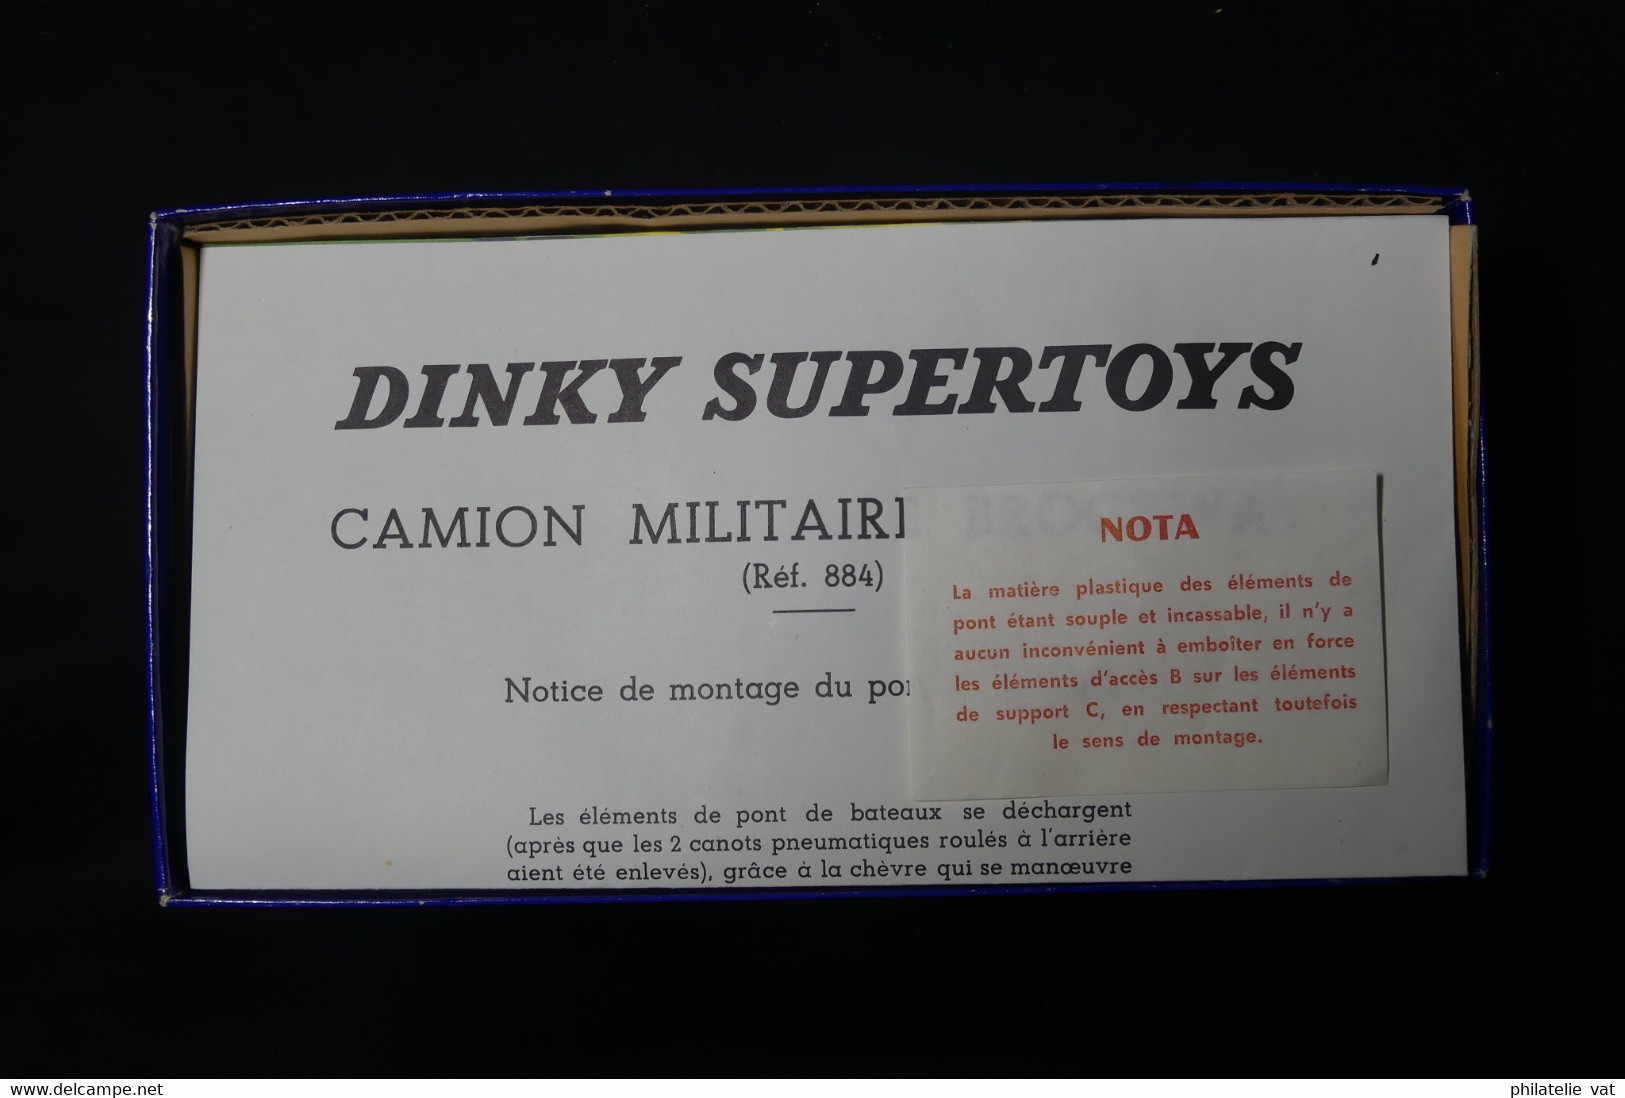 DINKY TOYS - Camion Militaire Brockway avec Pont de Bateaux. Etat neuf avec sa boite.  Made In France.